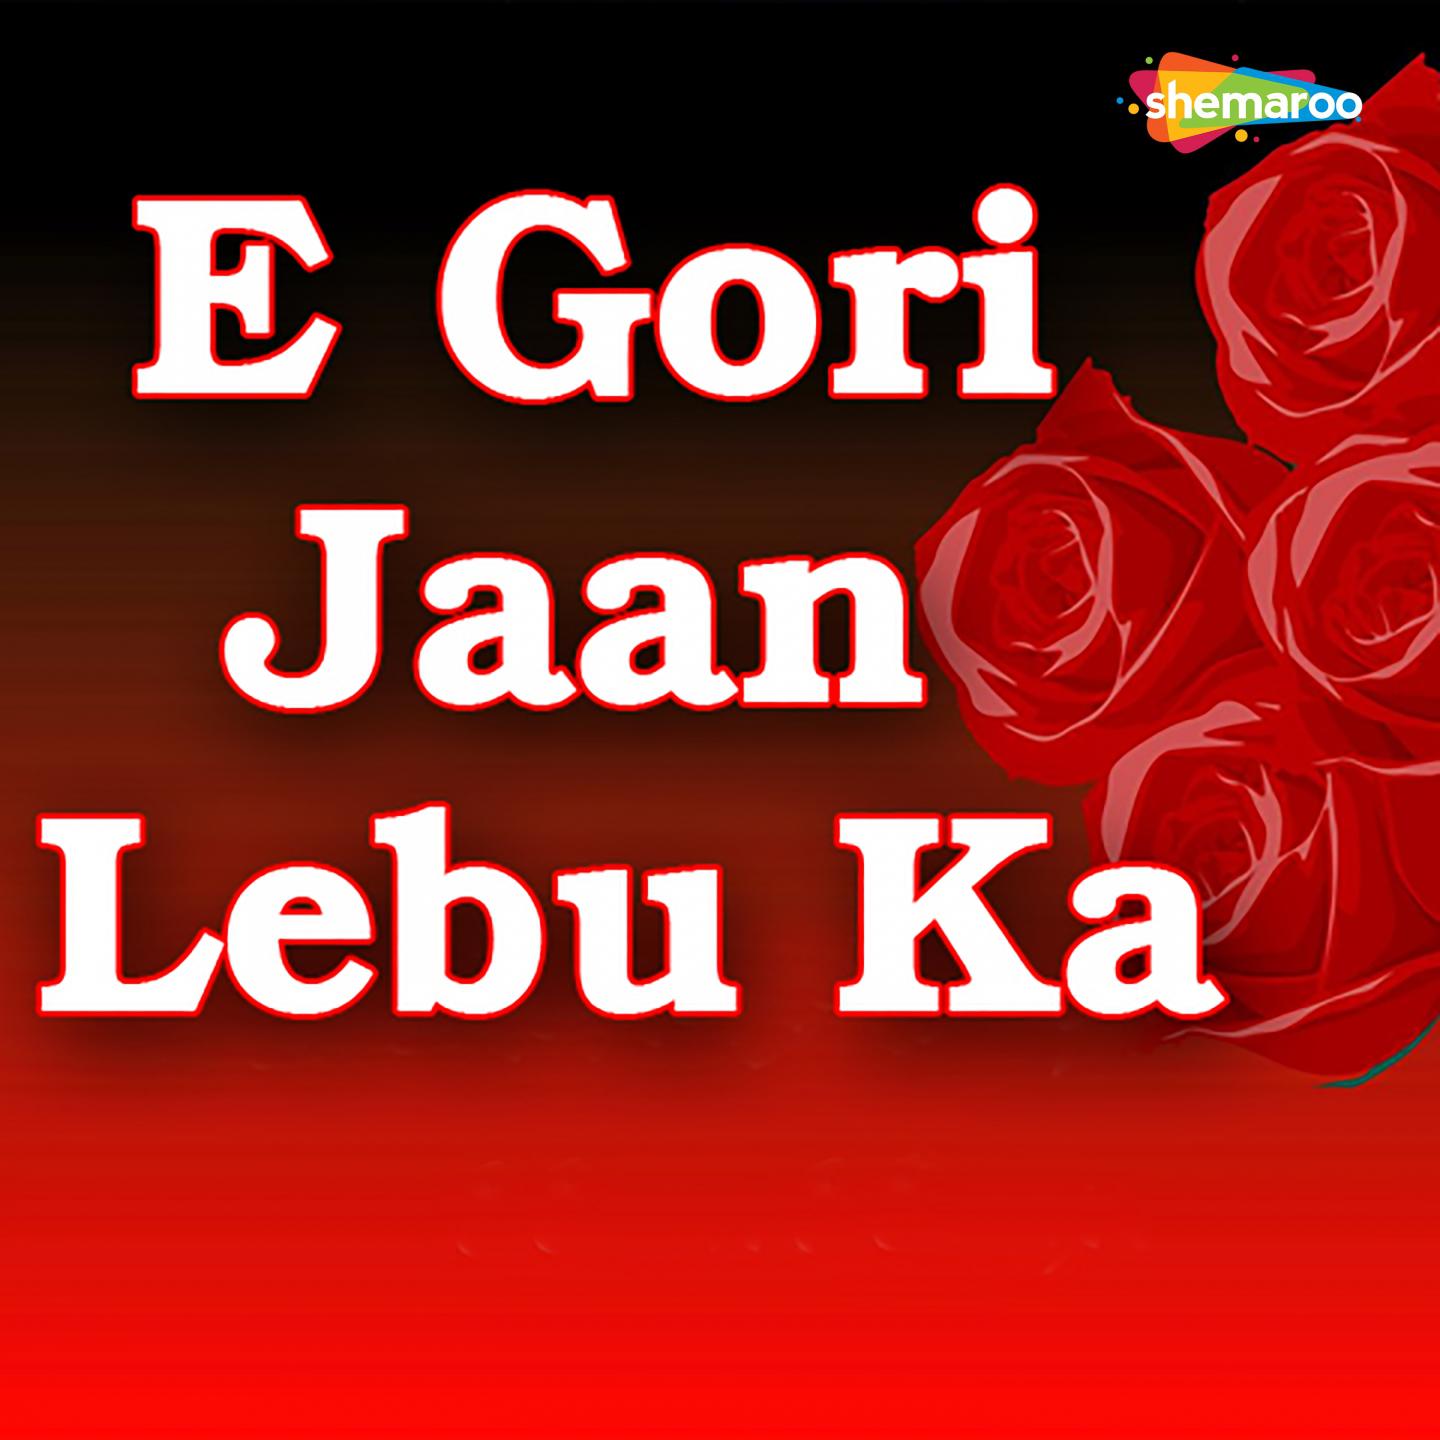 E Gori Jaan Lebu Ka